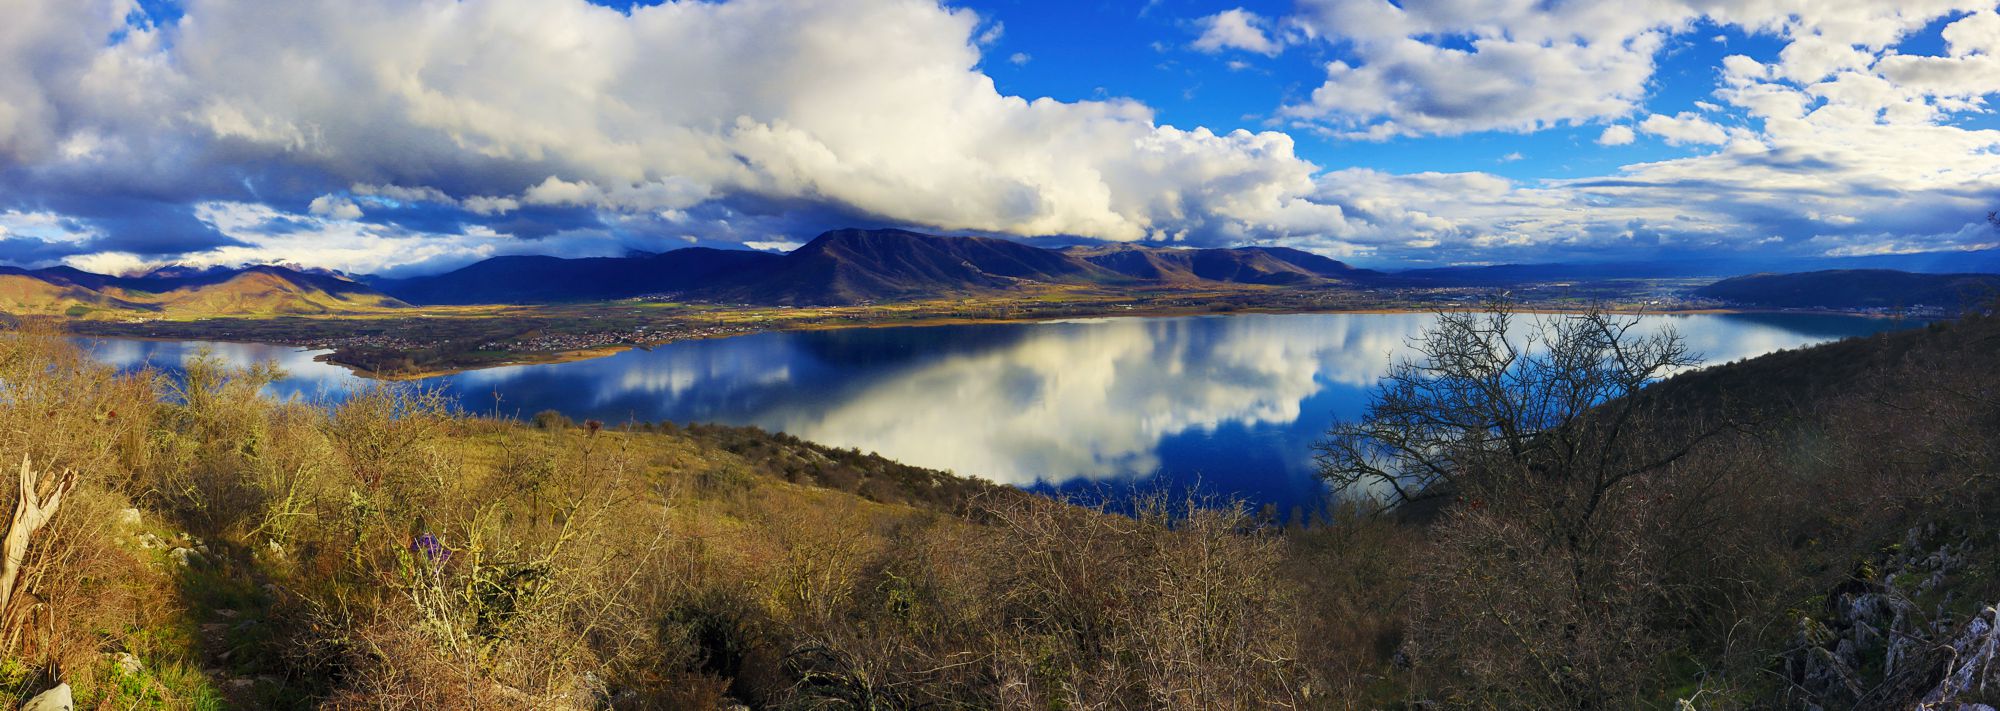 Τα βουνά της Καστοριάς: Η νότια περίμετρος της λίμνης Ορεστιάδα